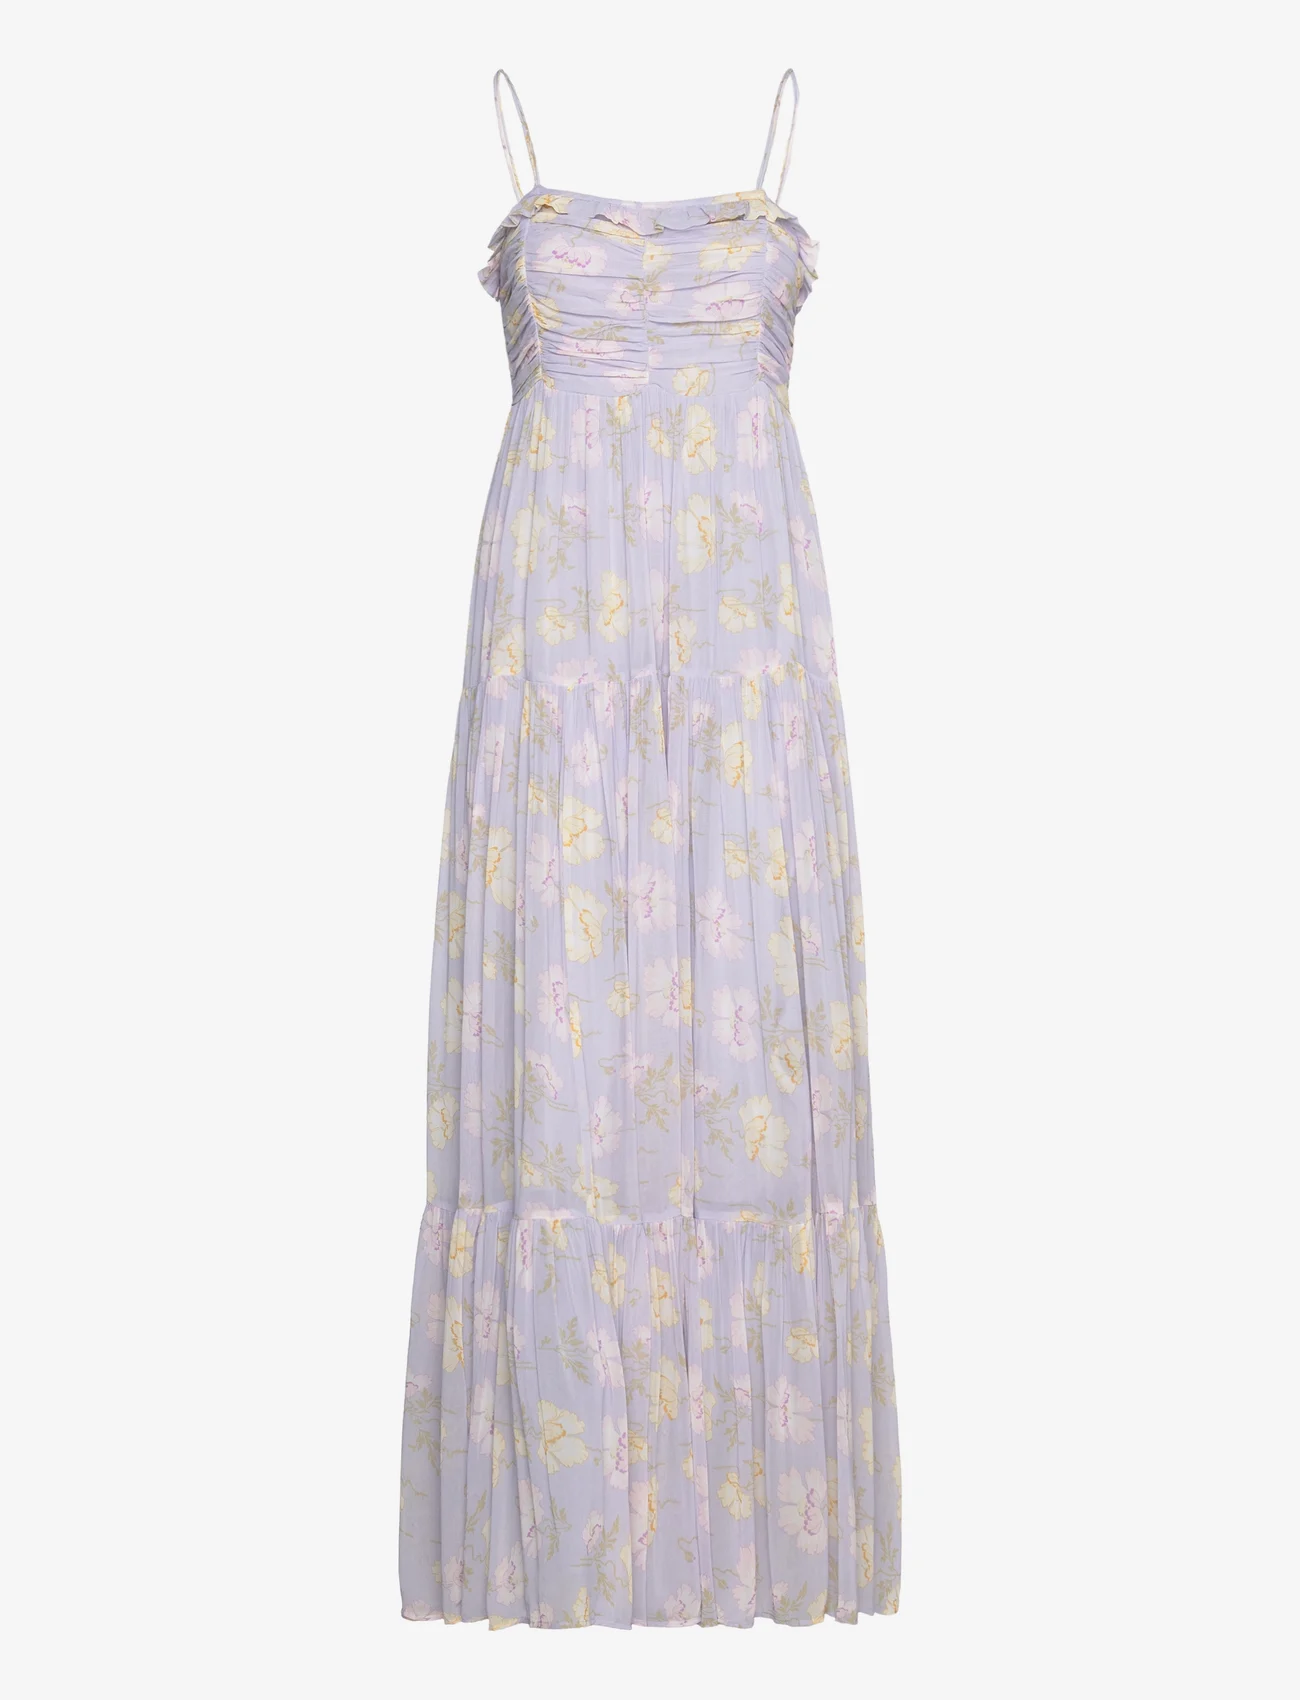 by Ti Mo - Georgette Strap Dress - odzież imprezowa w cenach outletowych - 541 - lilac flowers - 0